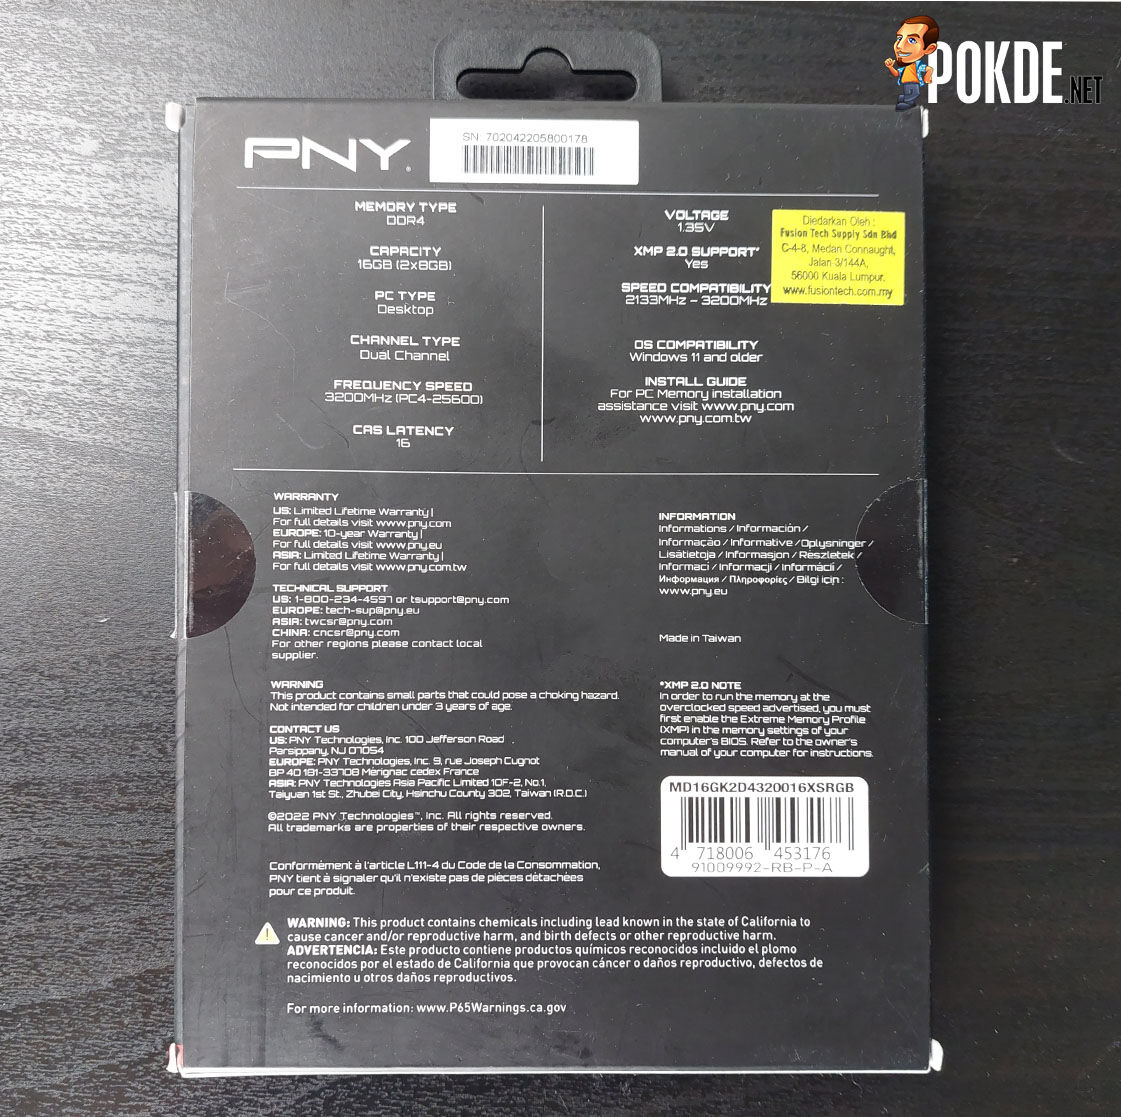 PNY XLR8 EPIC-X RGB Silver DDR4 (DDR4-3200 CL16) Review - A Cheap RGB Entry Ticket 33